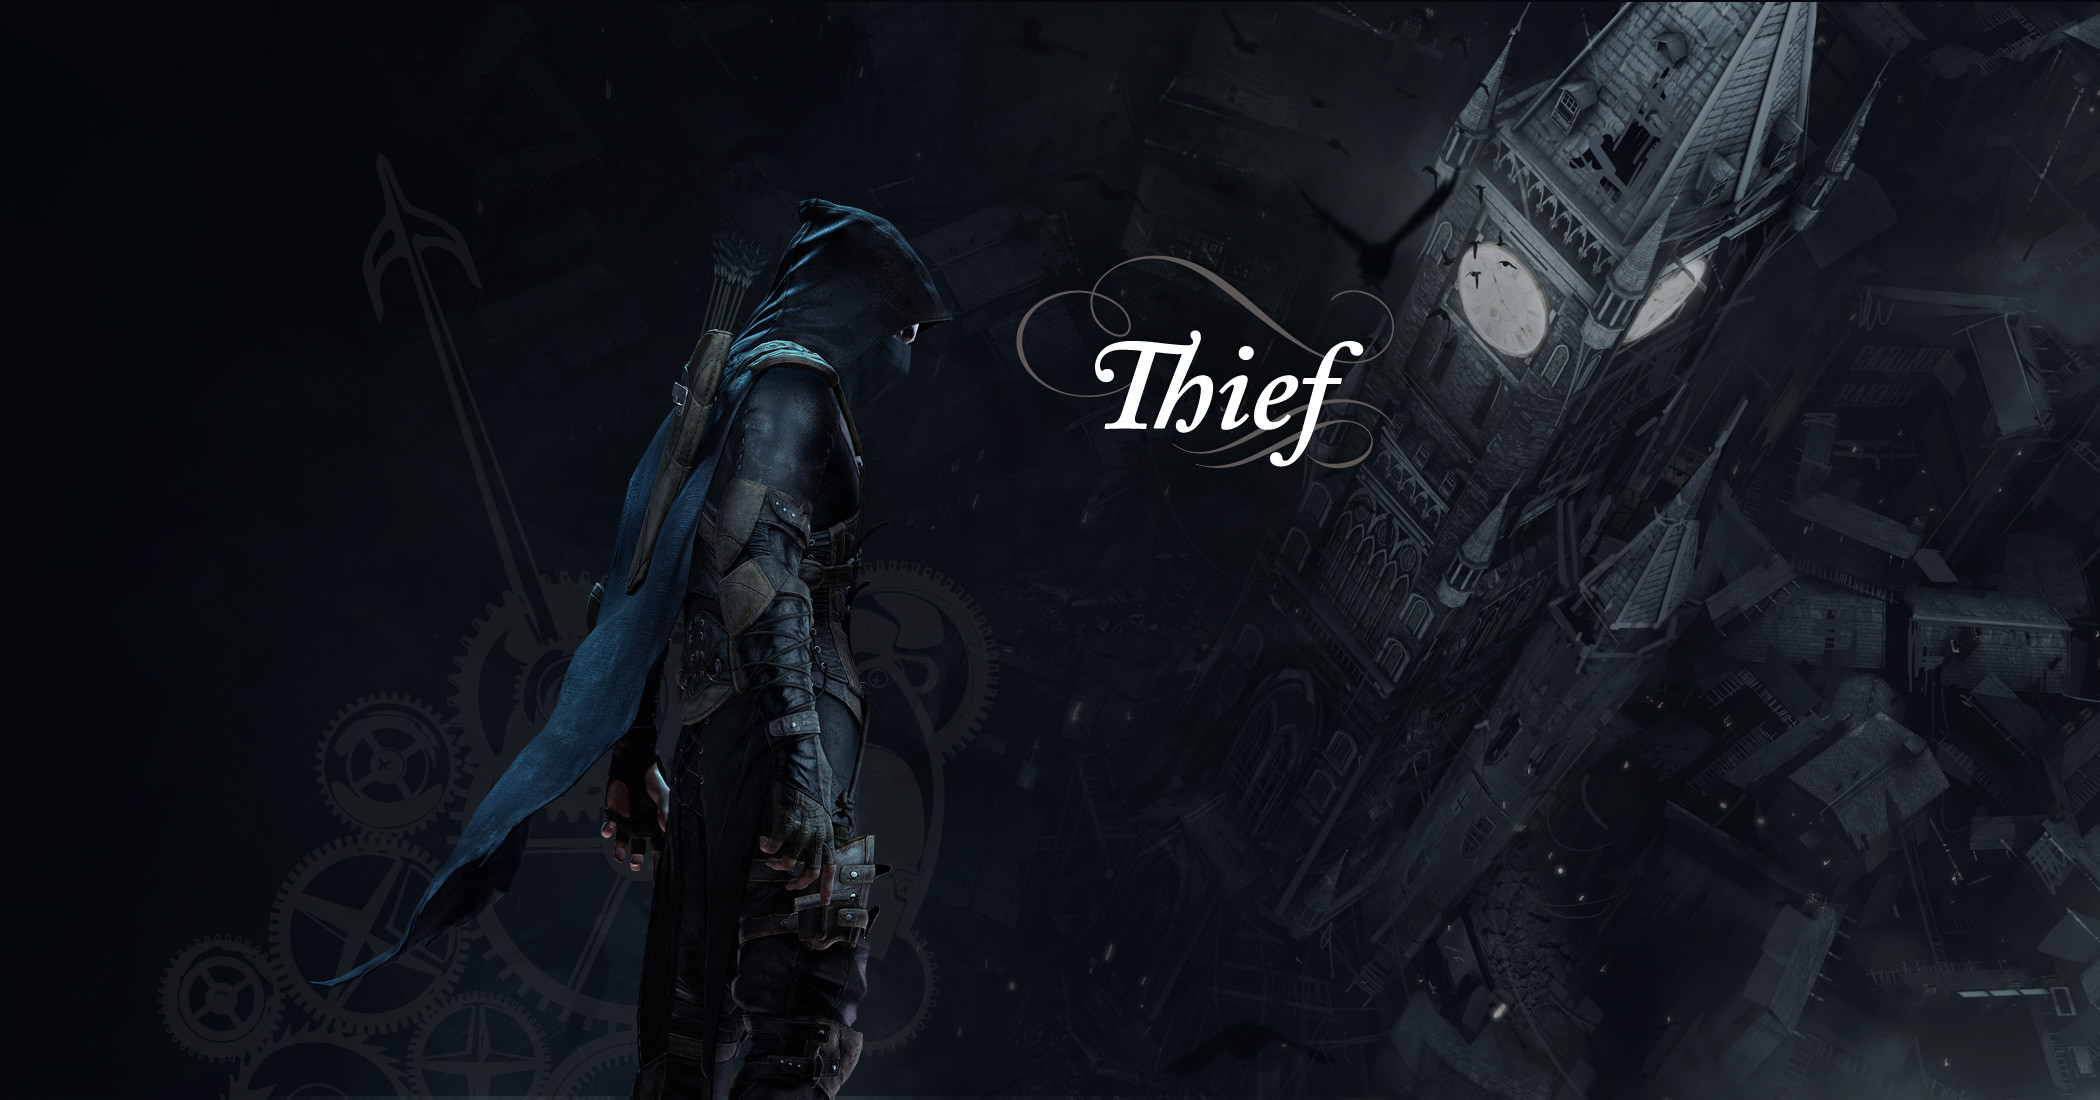 Gamewallpaper In Het Weekend Thief Inthegame